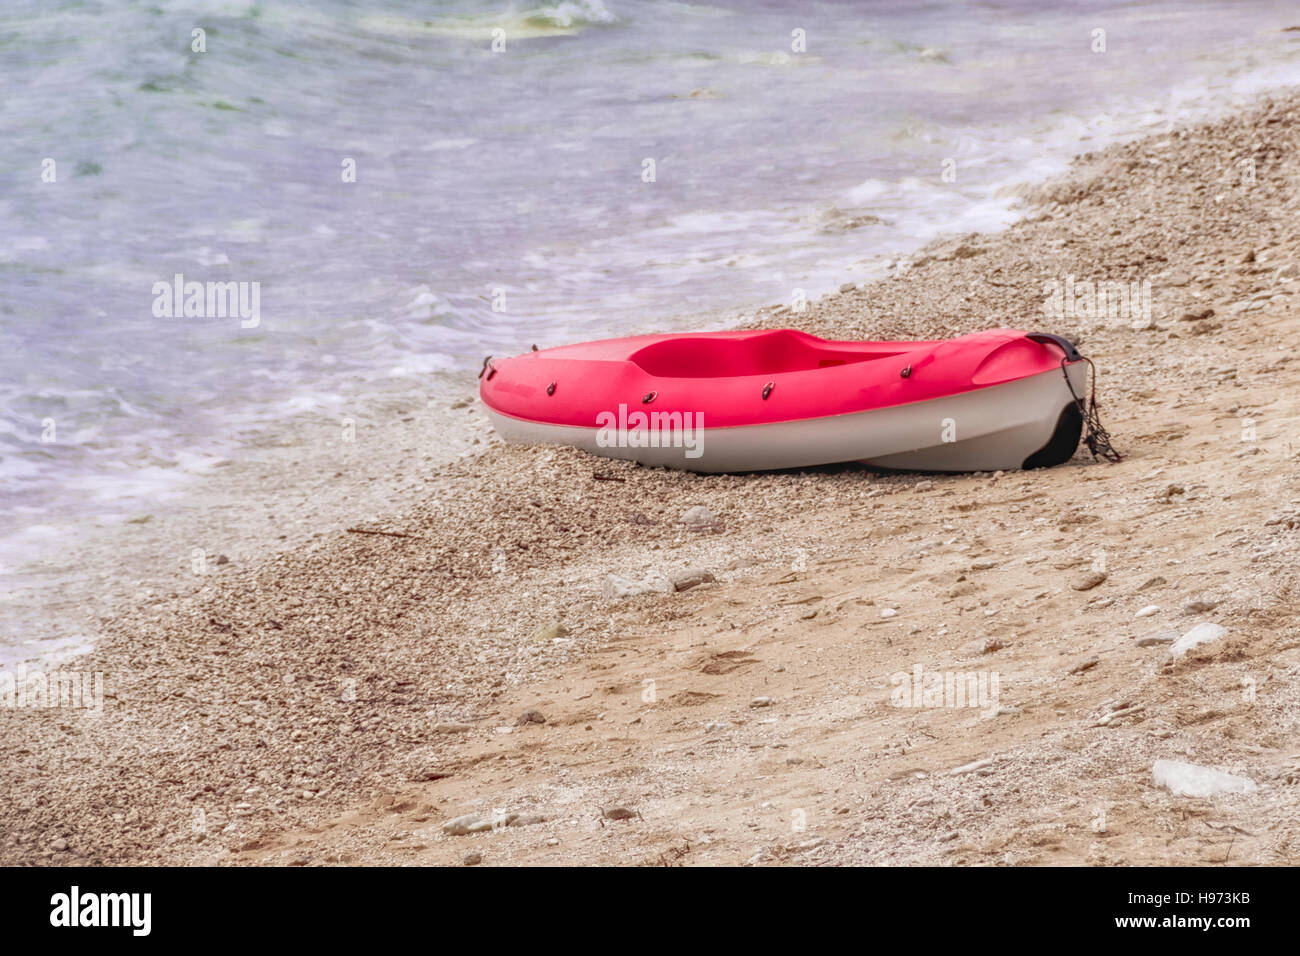 Canoa de plástico rojo y blanco en la playa de arena, copyspace, nadie Foto de stock